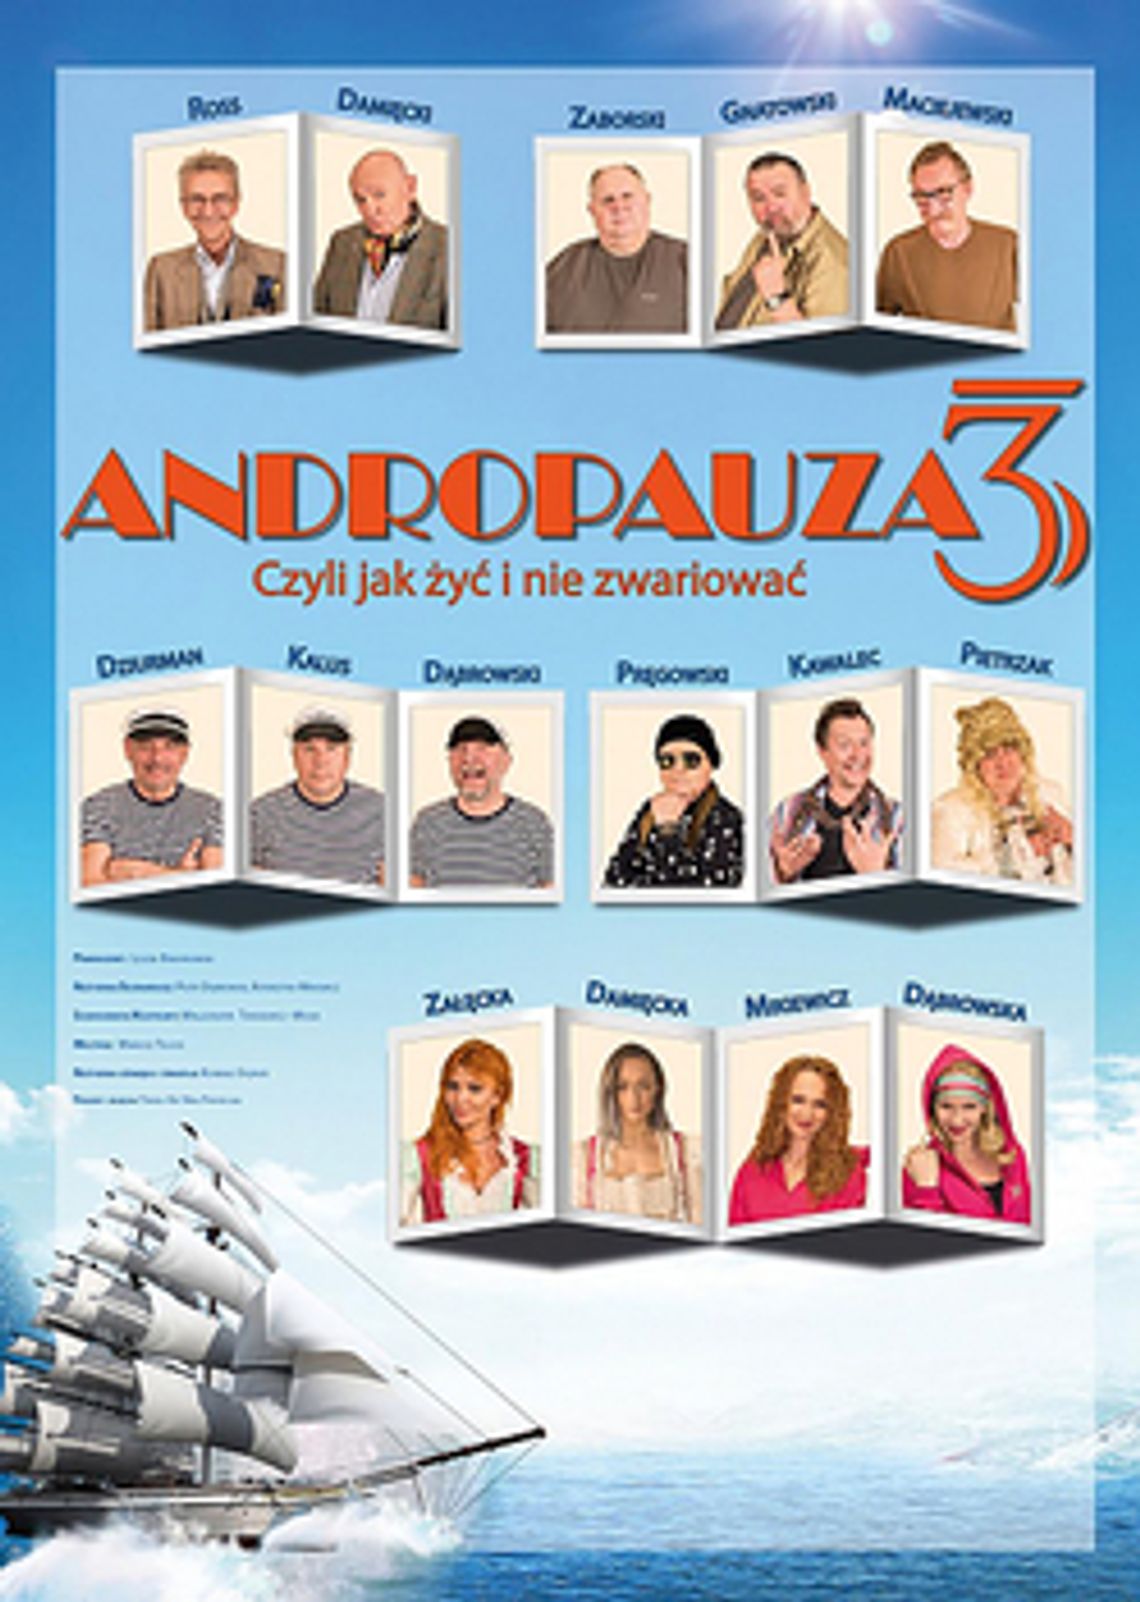 ANDROPAUZA 3 - komedia w gwiazdorskiej obsadzie!